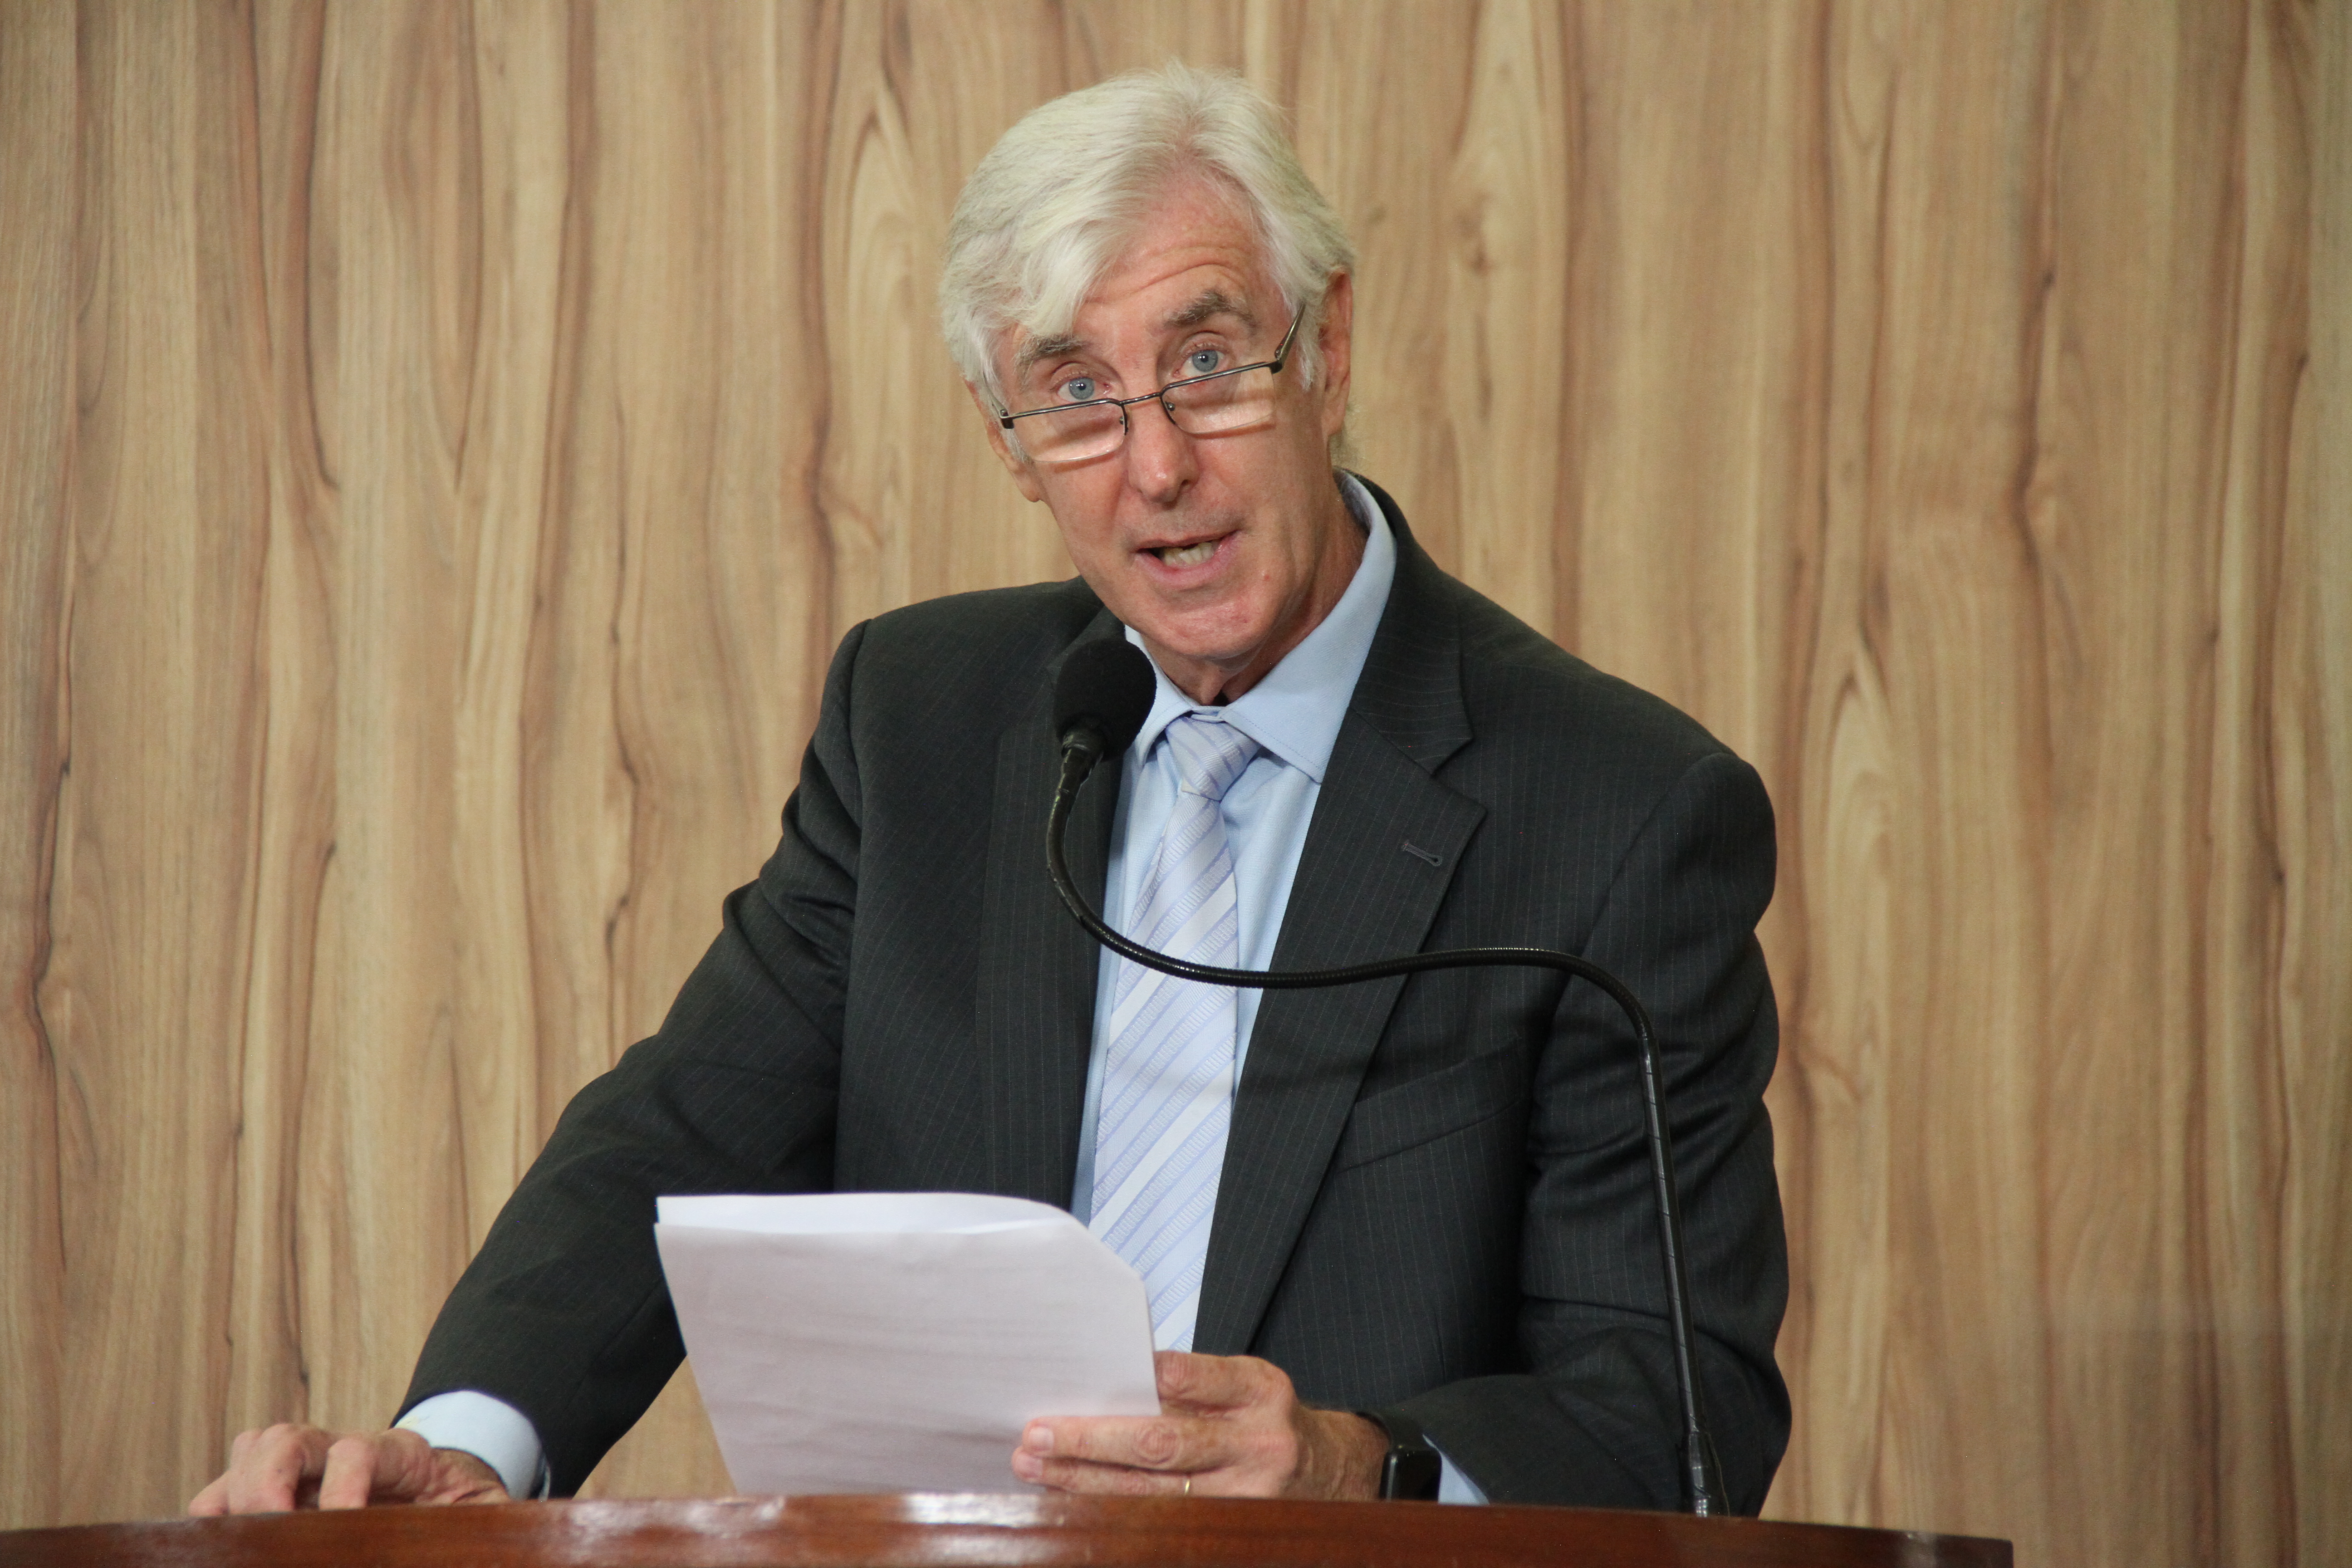 #PraCegoVer: Foto mostra o vereador Mayr discursando na tribuna da Câmara. Ele segura um documento nas mãos.